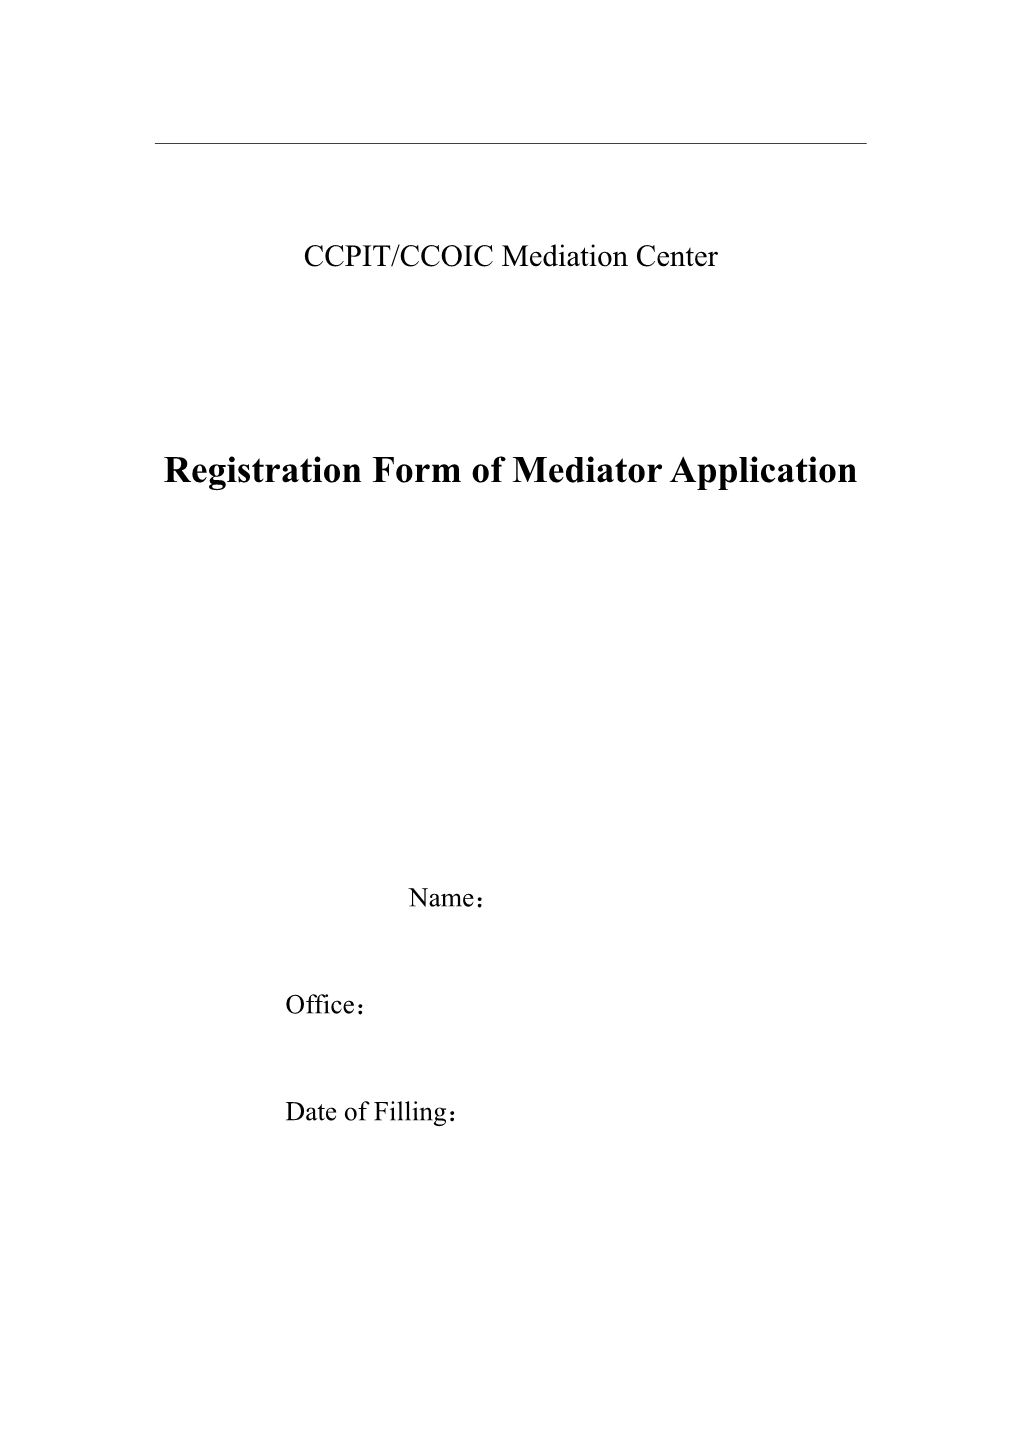 Registration Form of Mediator Application